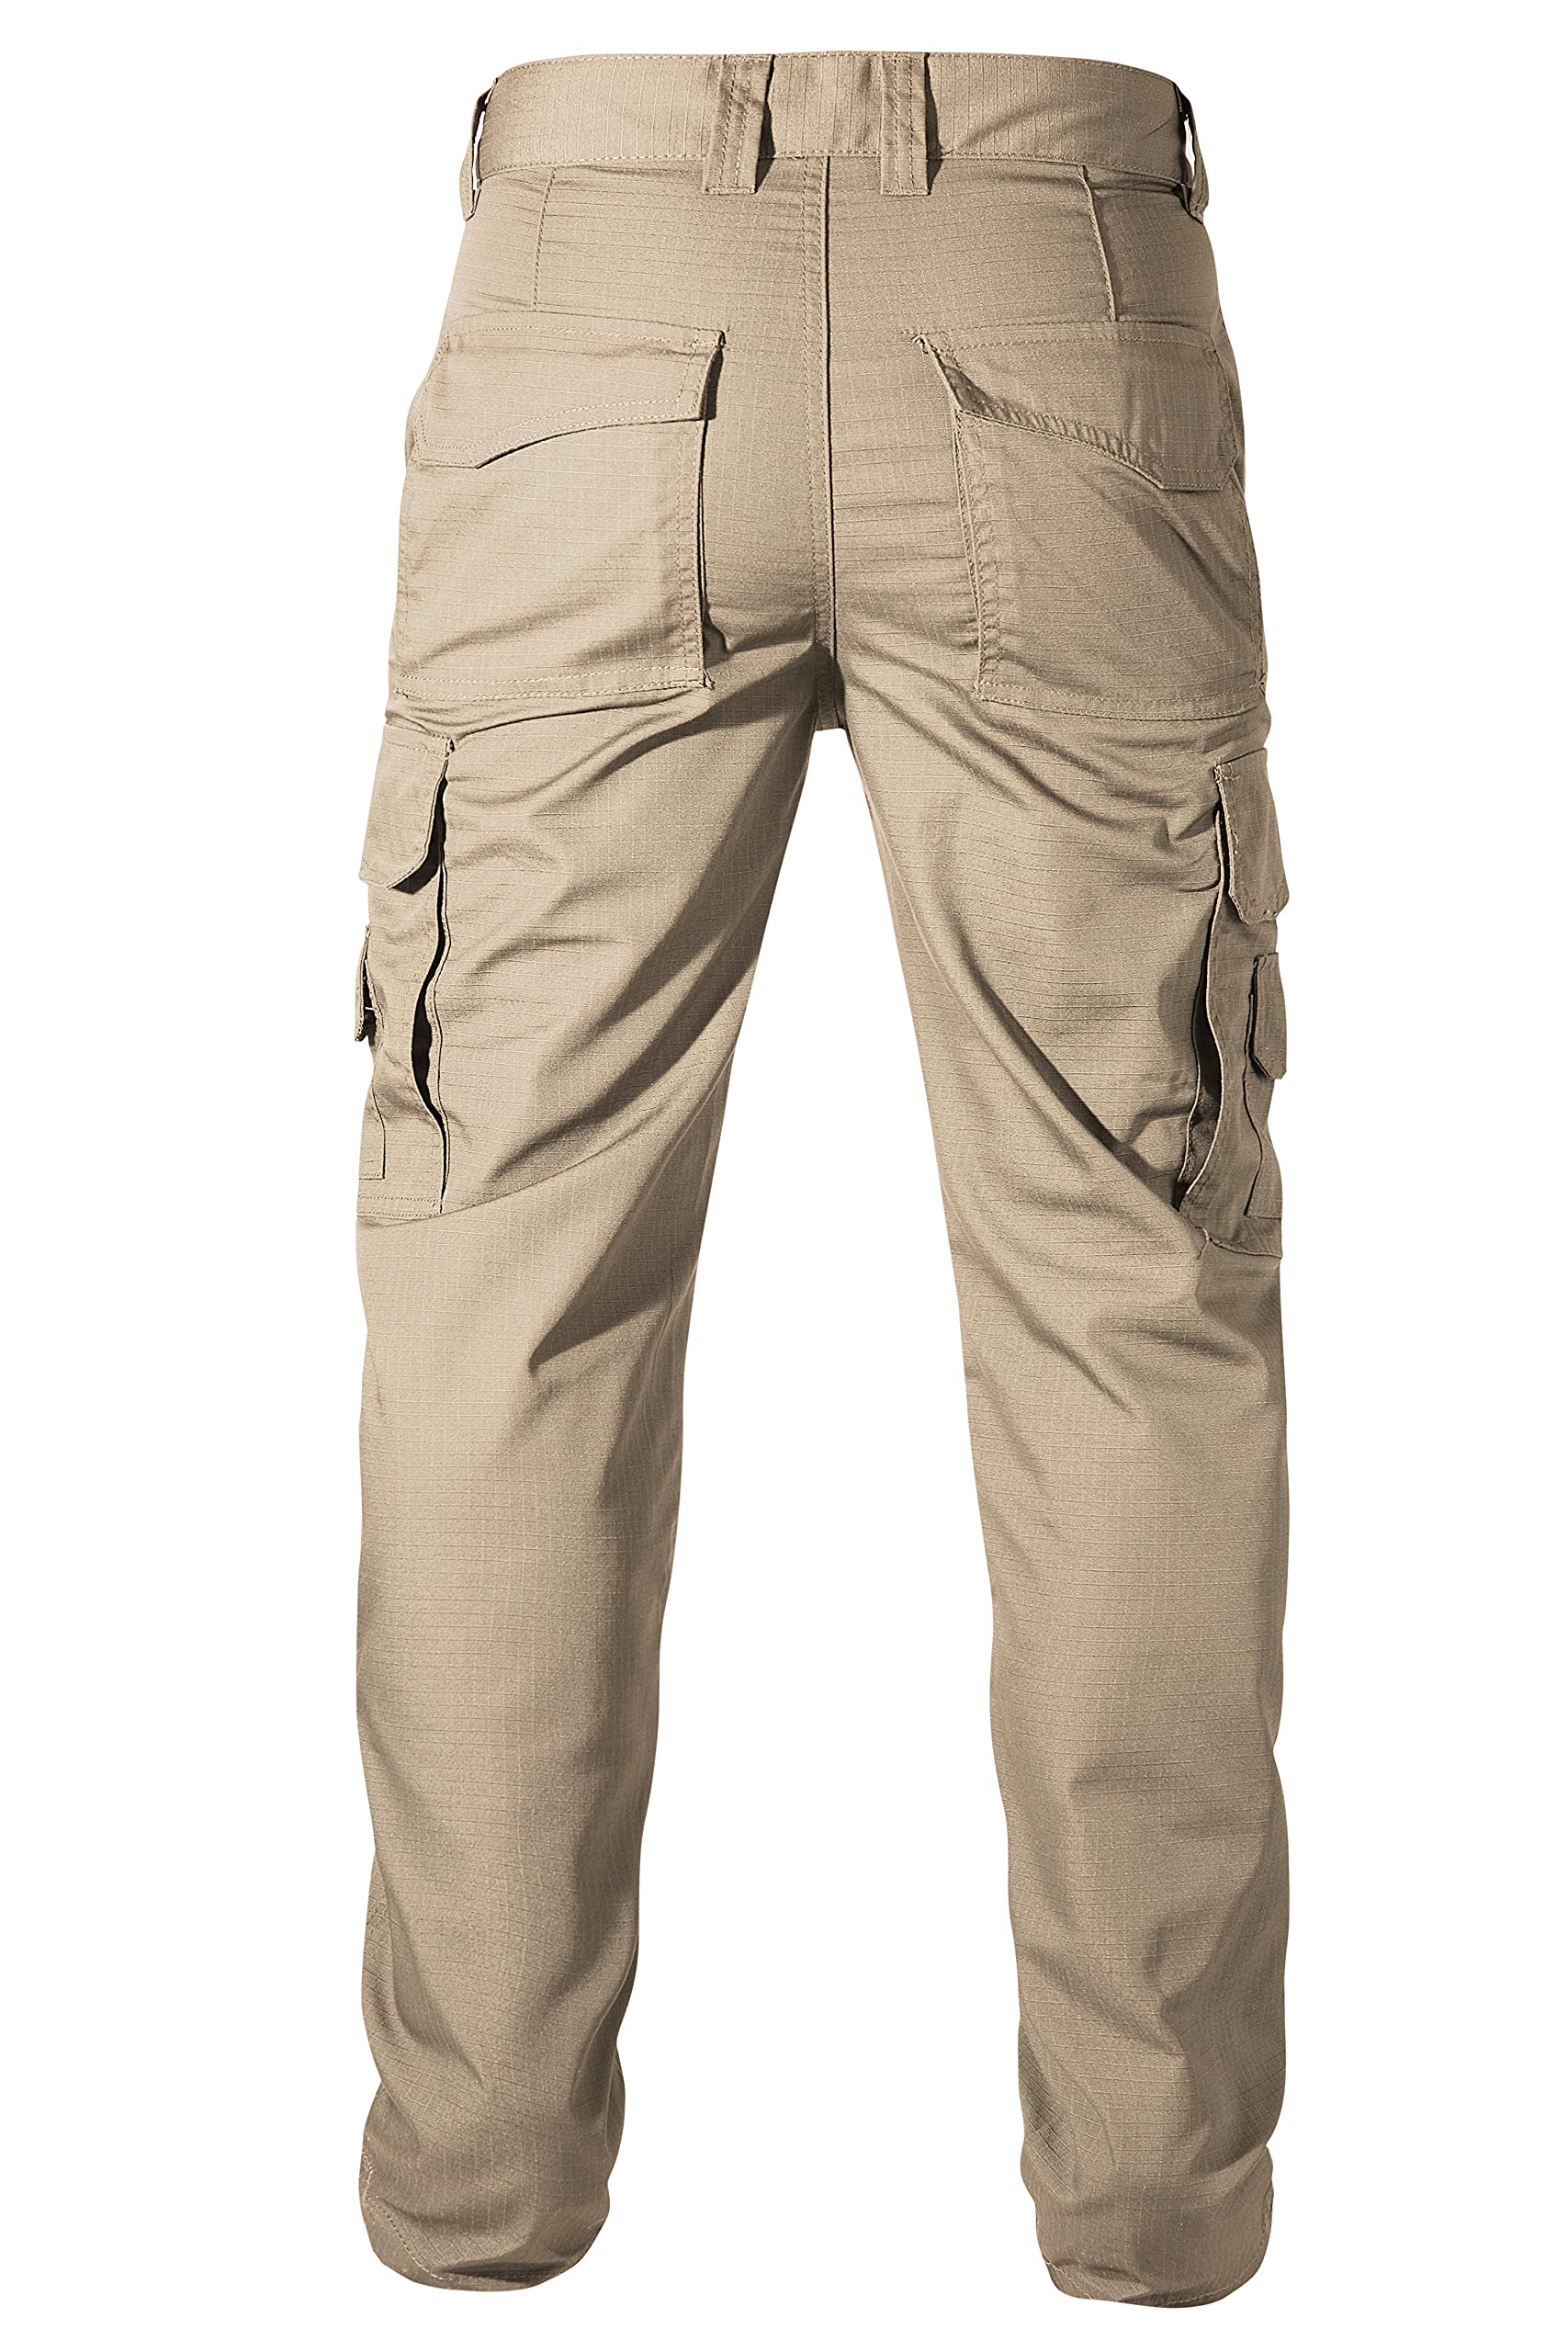 TRICORP Unisex TRICOPR Cordura Canvas Work Pants - low waist T61 - khaki |  ONLINE-TEXTIL.COM